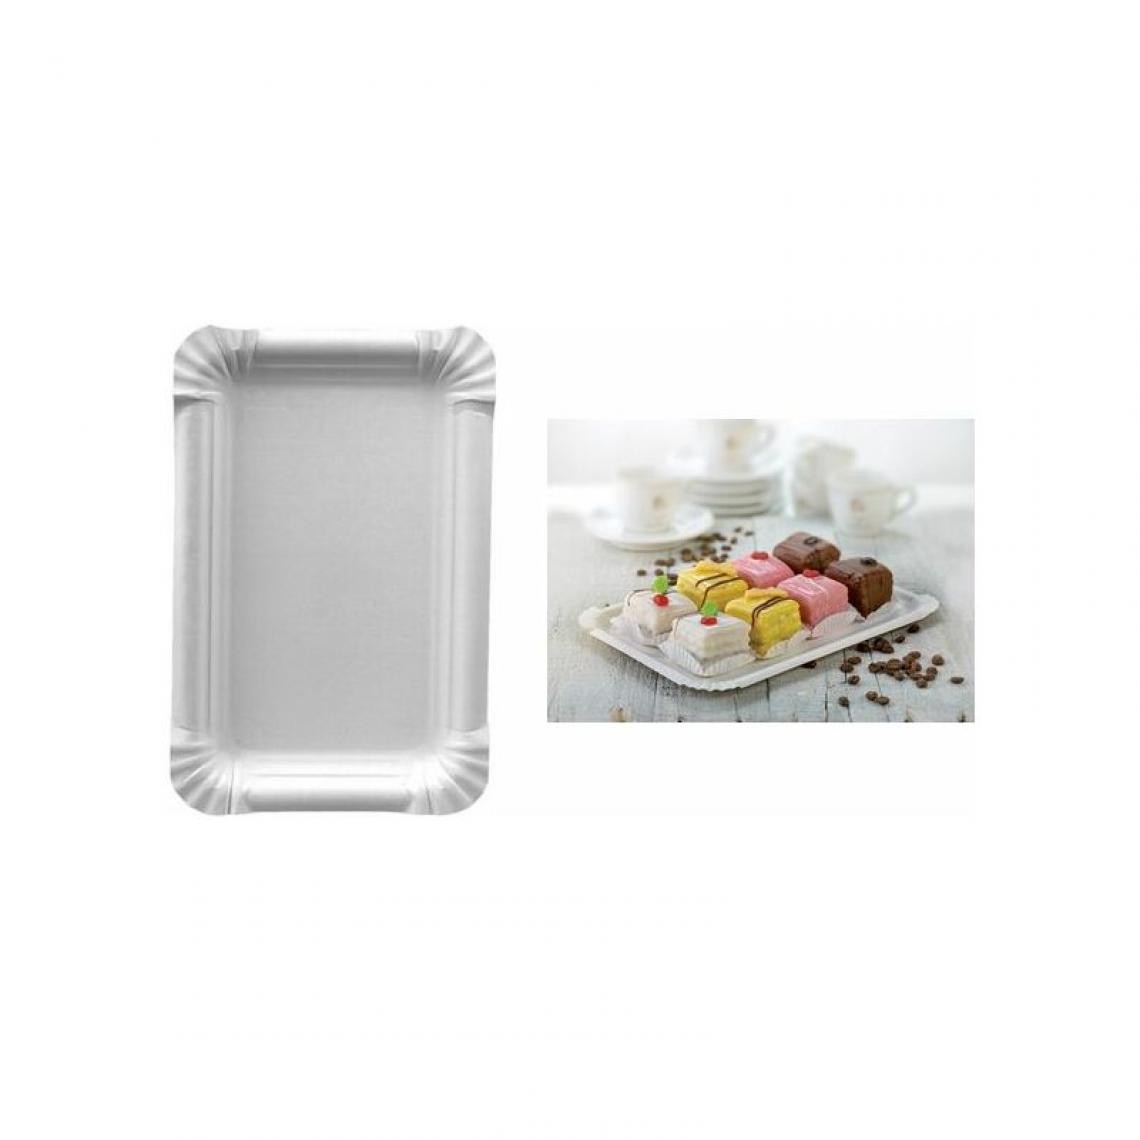 PAPSTAR - PAPSTAR Assiette en carton 'pure' rectangulaire, blanc () - Cuisine et ménage